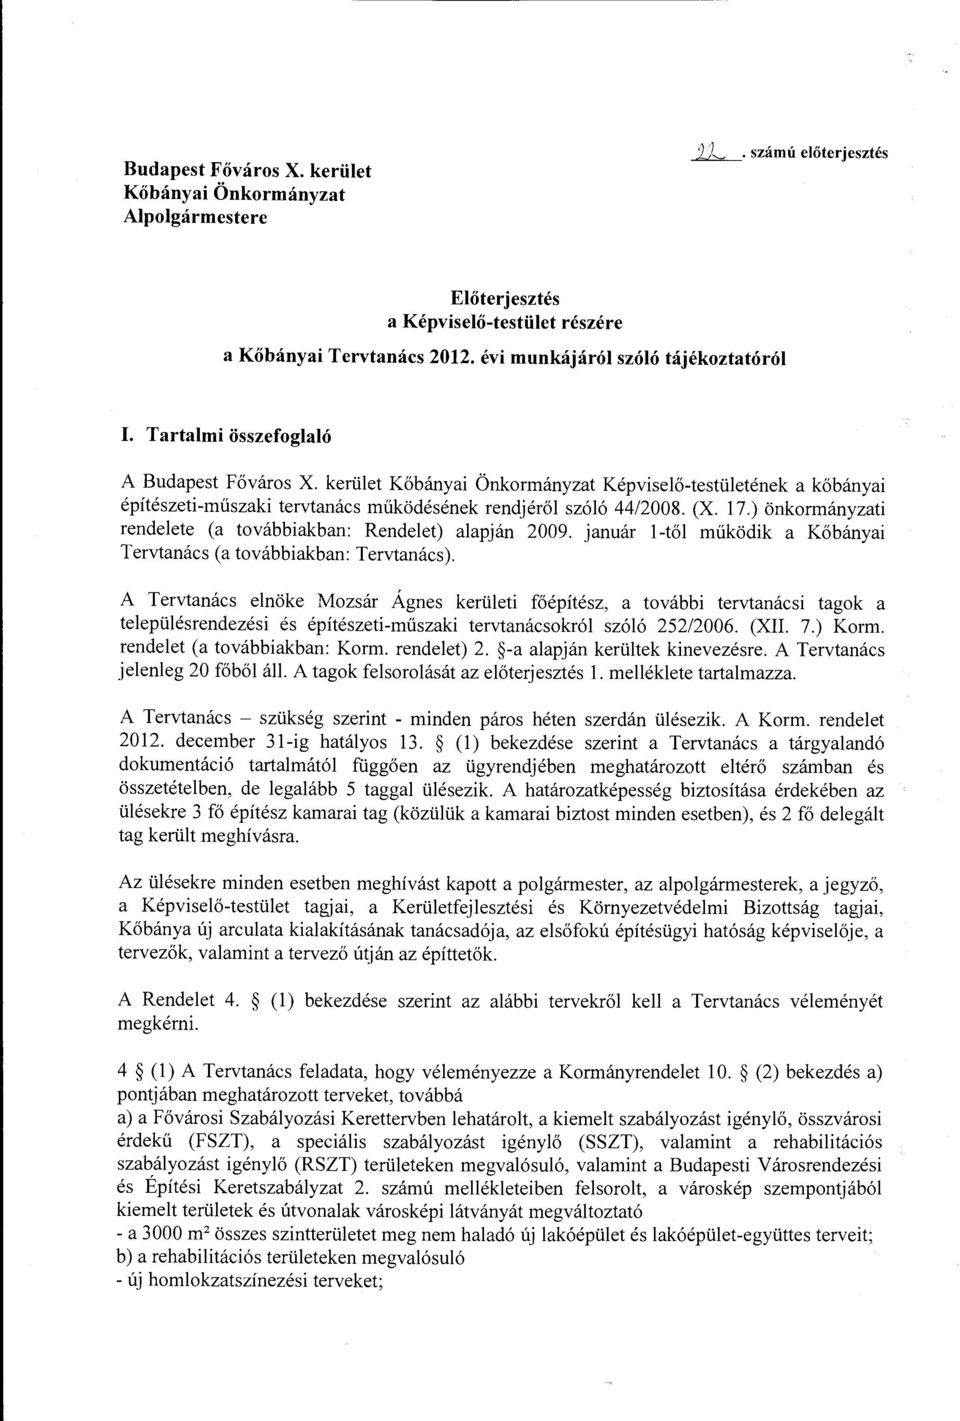 ) önkormányzati rendelete (a továbbiakban: Rendelet) alapján 2009. január l-től működik a Kőbányai Tervtanács (a továbbiakban: Tervtanács).